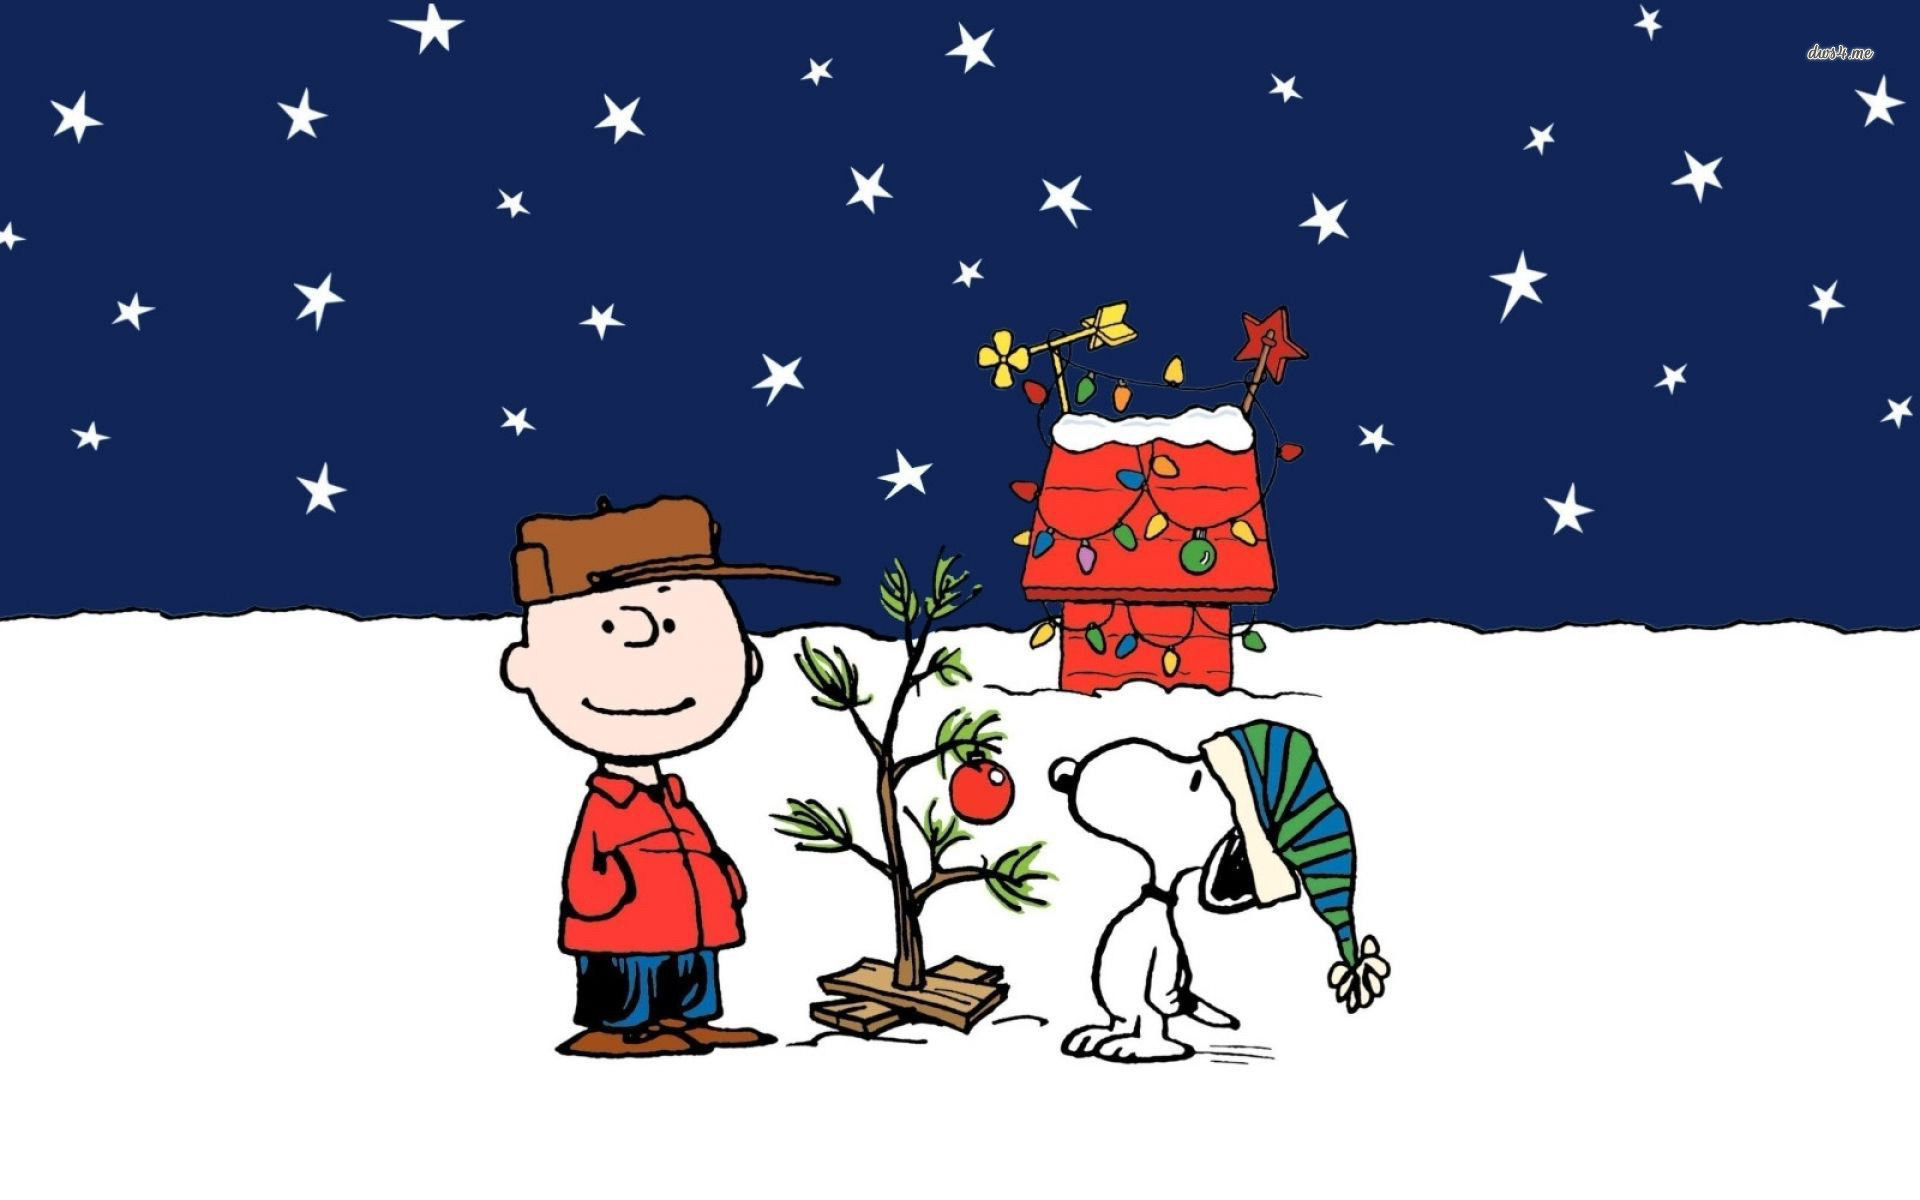 Động viên tinh thần của mình với hình nền Giáng sinh Snoopy, một bộ ảnh đầy năng lượng tích cực với Snoopy và bạn bè của mình khiến cho tâm trí bạn cảm thấy thật sự tươi vui.